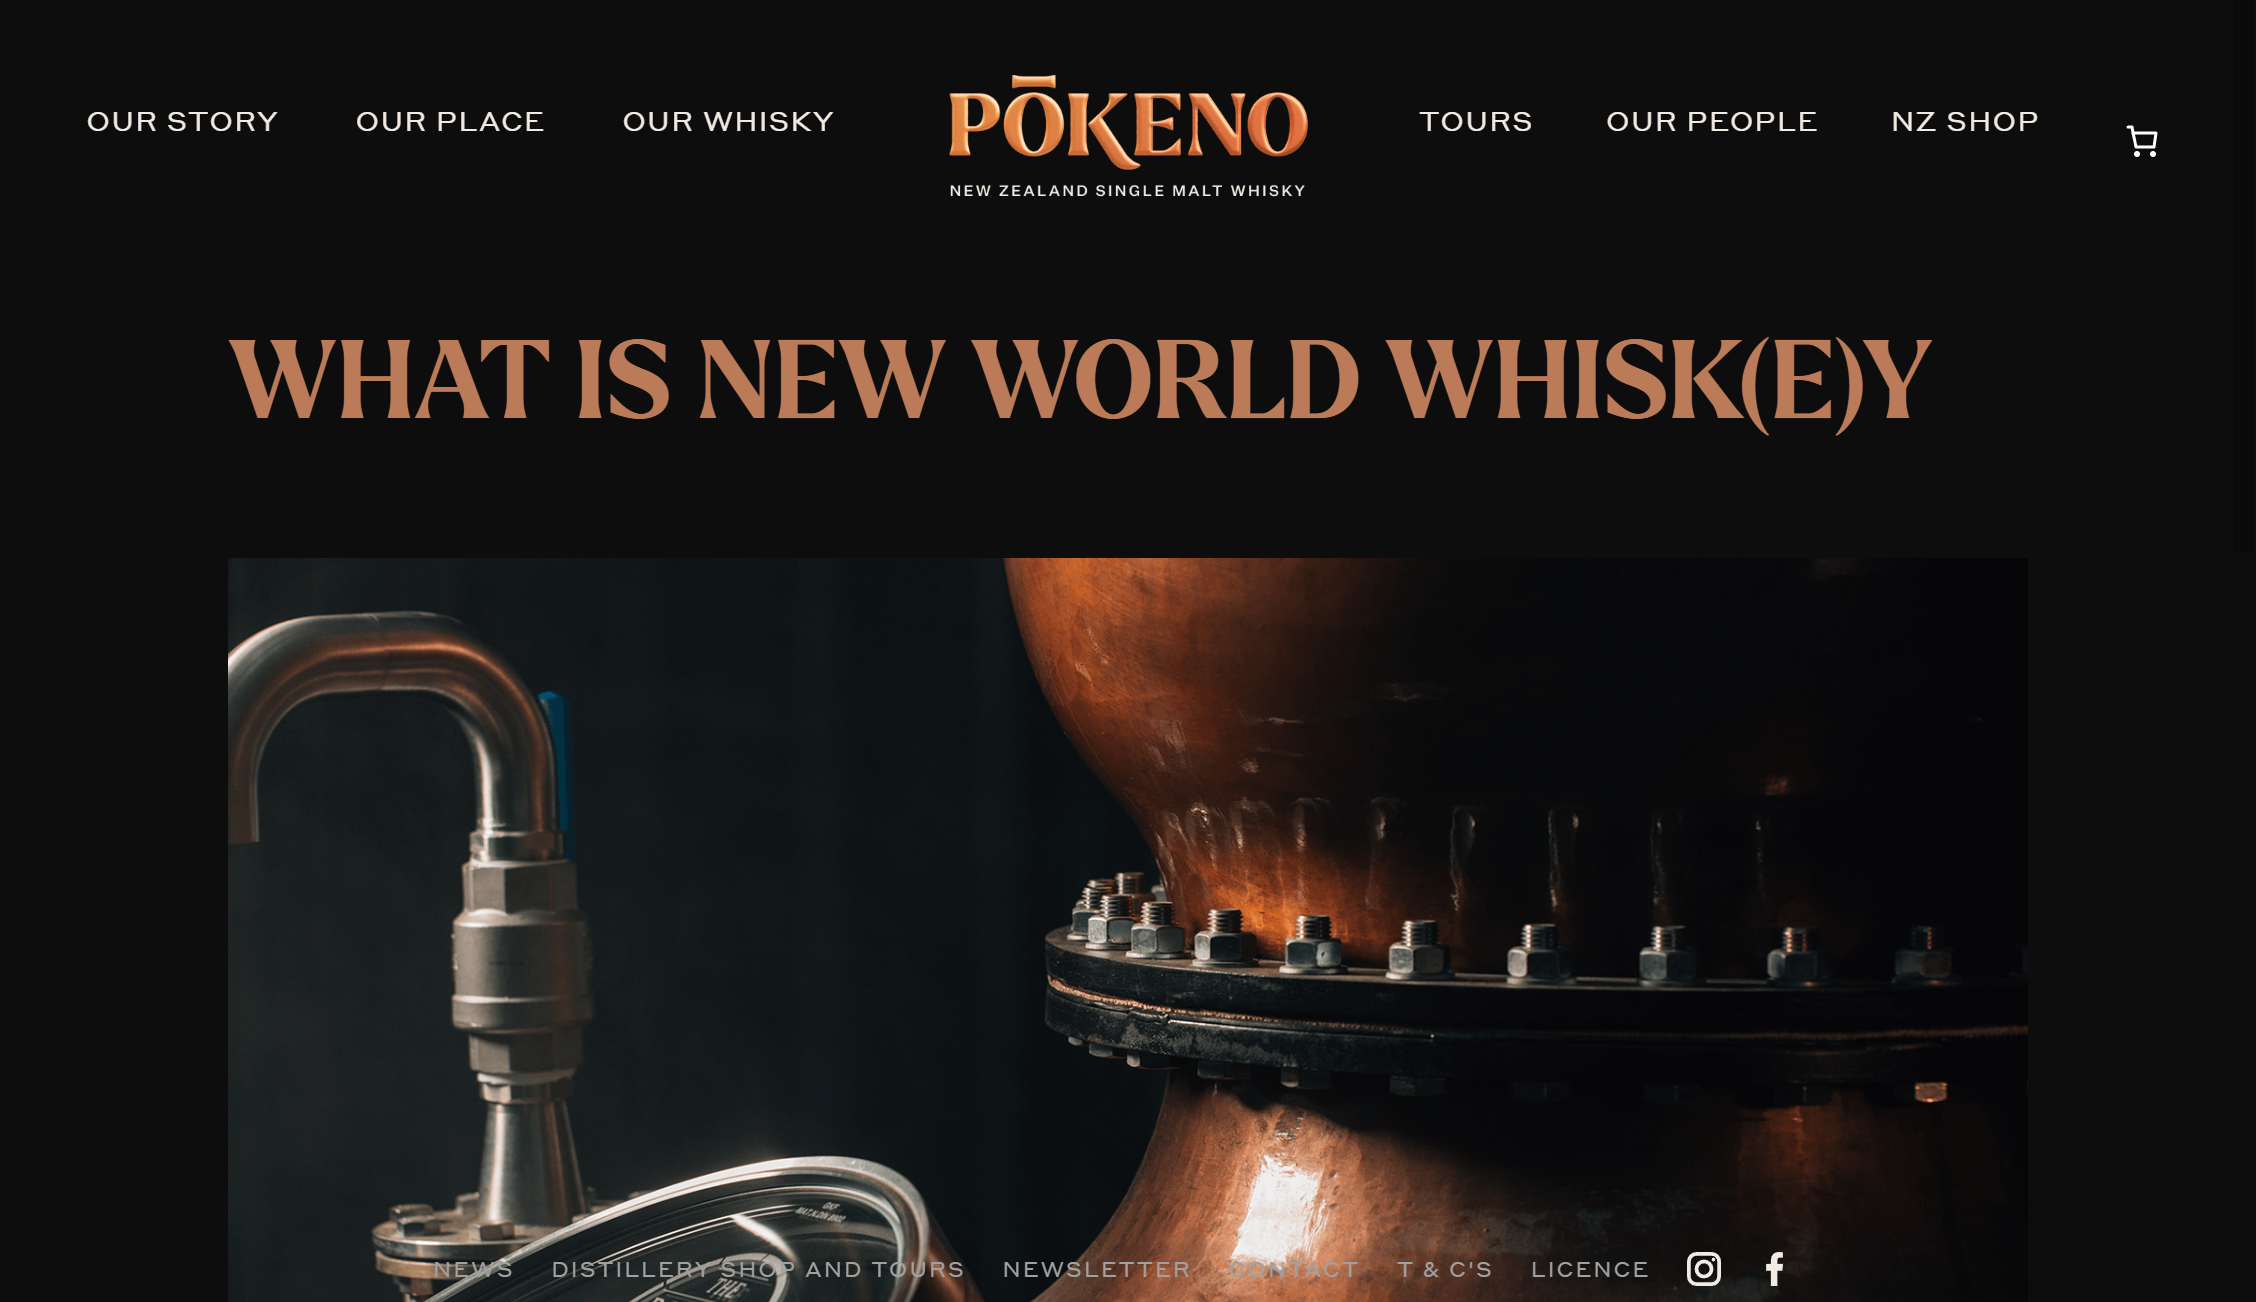 pokeno whisky new world 1a